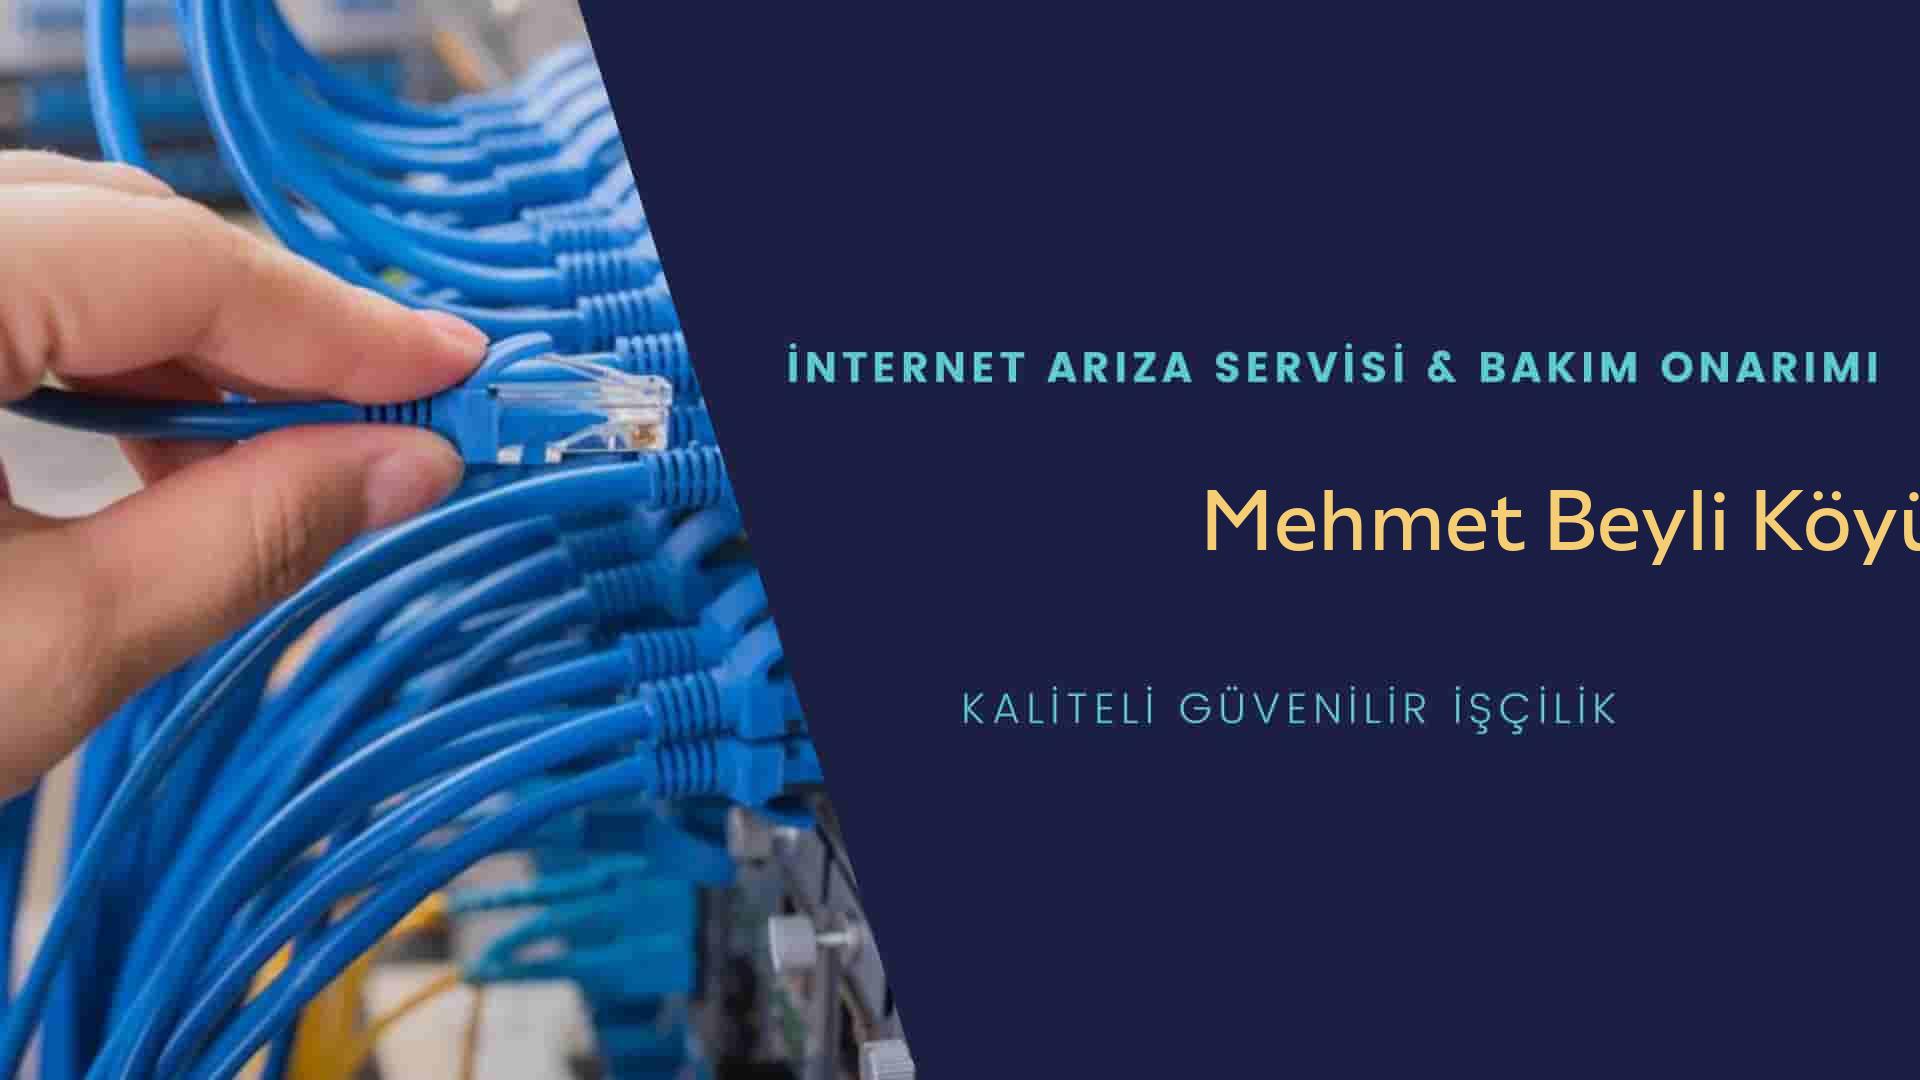 Mehmet Beyli Köyü internet kablosu çekimi yapan yerler veya elektrikçiler mi? arıyorsunuz doğru yerdesiniz o zaman sizlere 7/24 yardımcı olacak profesyonel ustalarımız bir telefon kadar yakındır size.